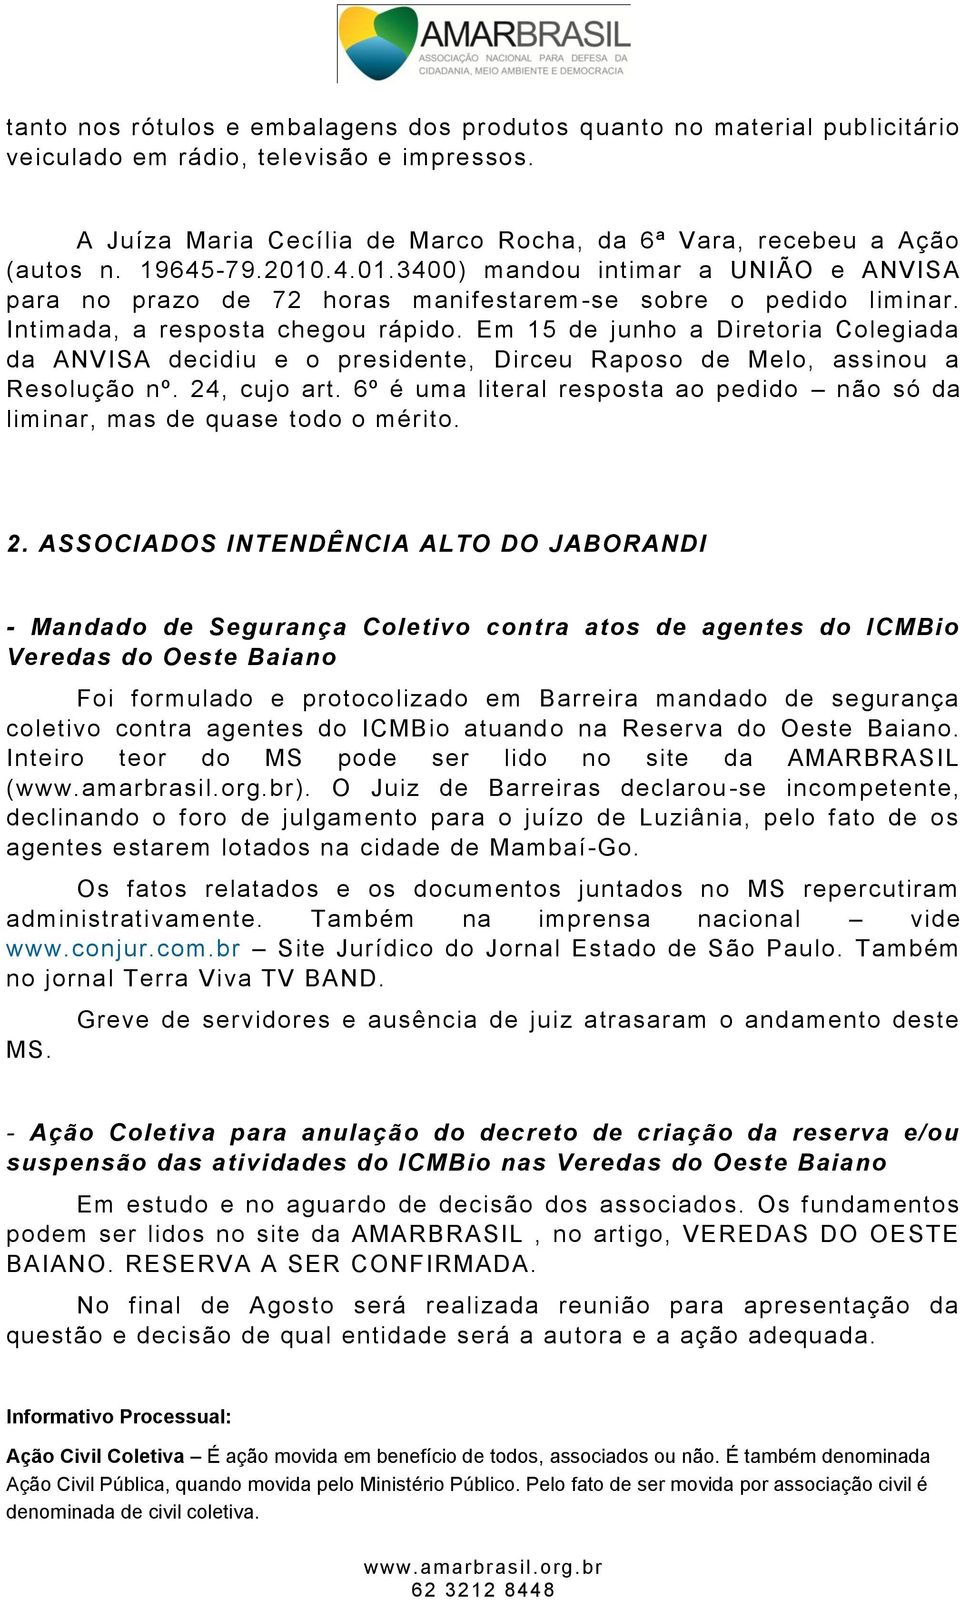 Em 15 de junho a Diretoria Colegiada da ANVISA decidiu e o presidente, Dirceu Raposo de Melo, assinou a Resolução nº. 24, cujo art.